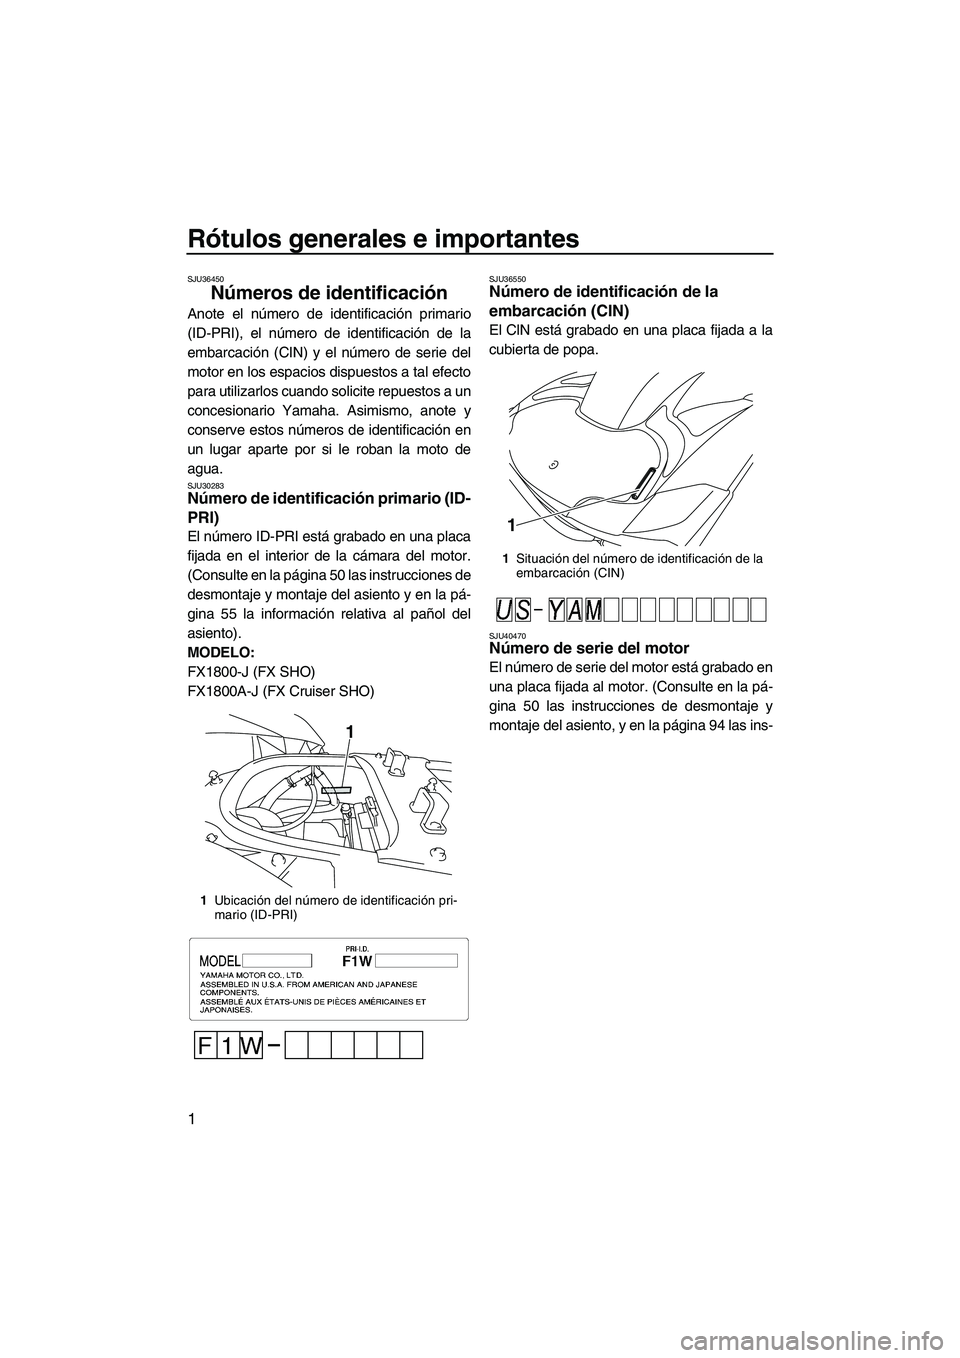 YAMAHA SVHO 2010  Manuale de Empleo (in Spanish) Rótulos generales e importantes
1
SJU36450
Números de identificación 
Anote el número de identificación primario
(ID-PRI), el número de identificación de la
embarcación (CIN) y el número de s